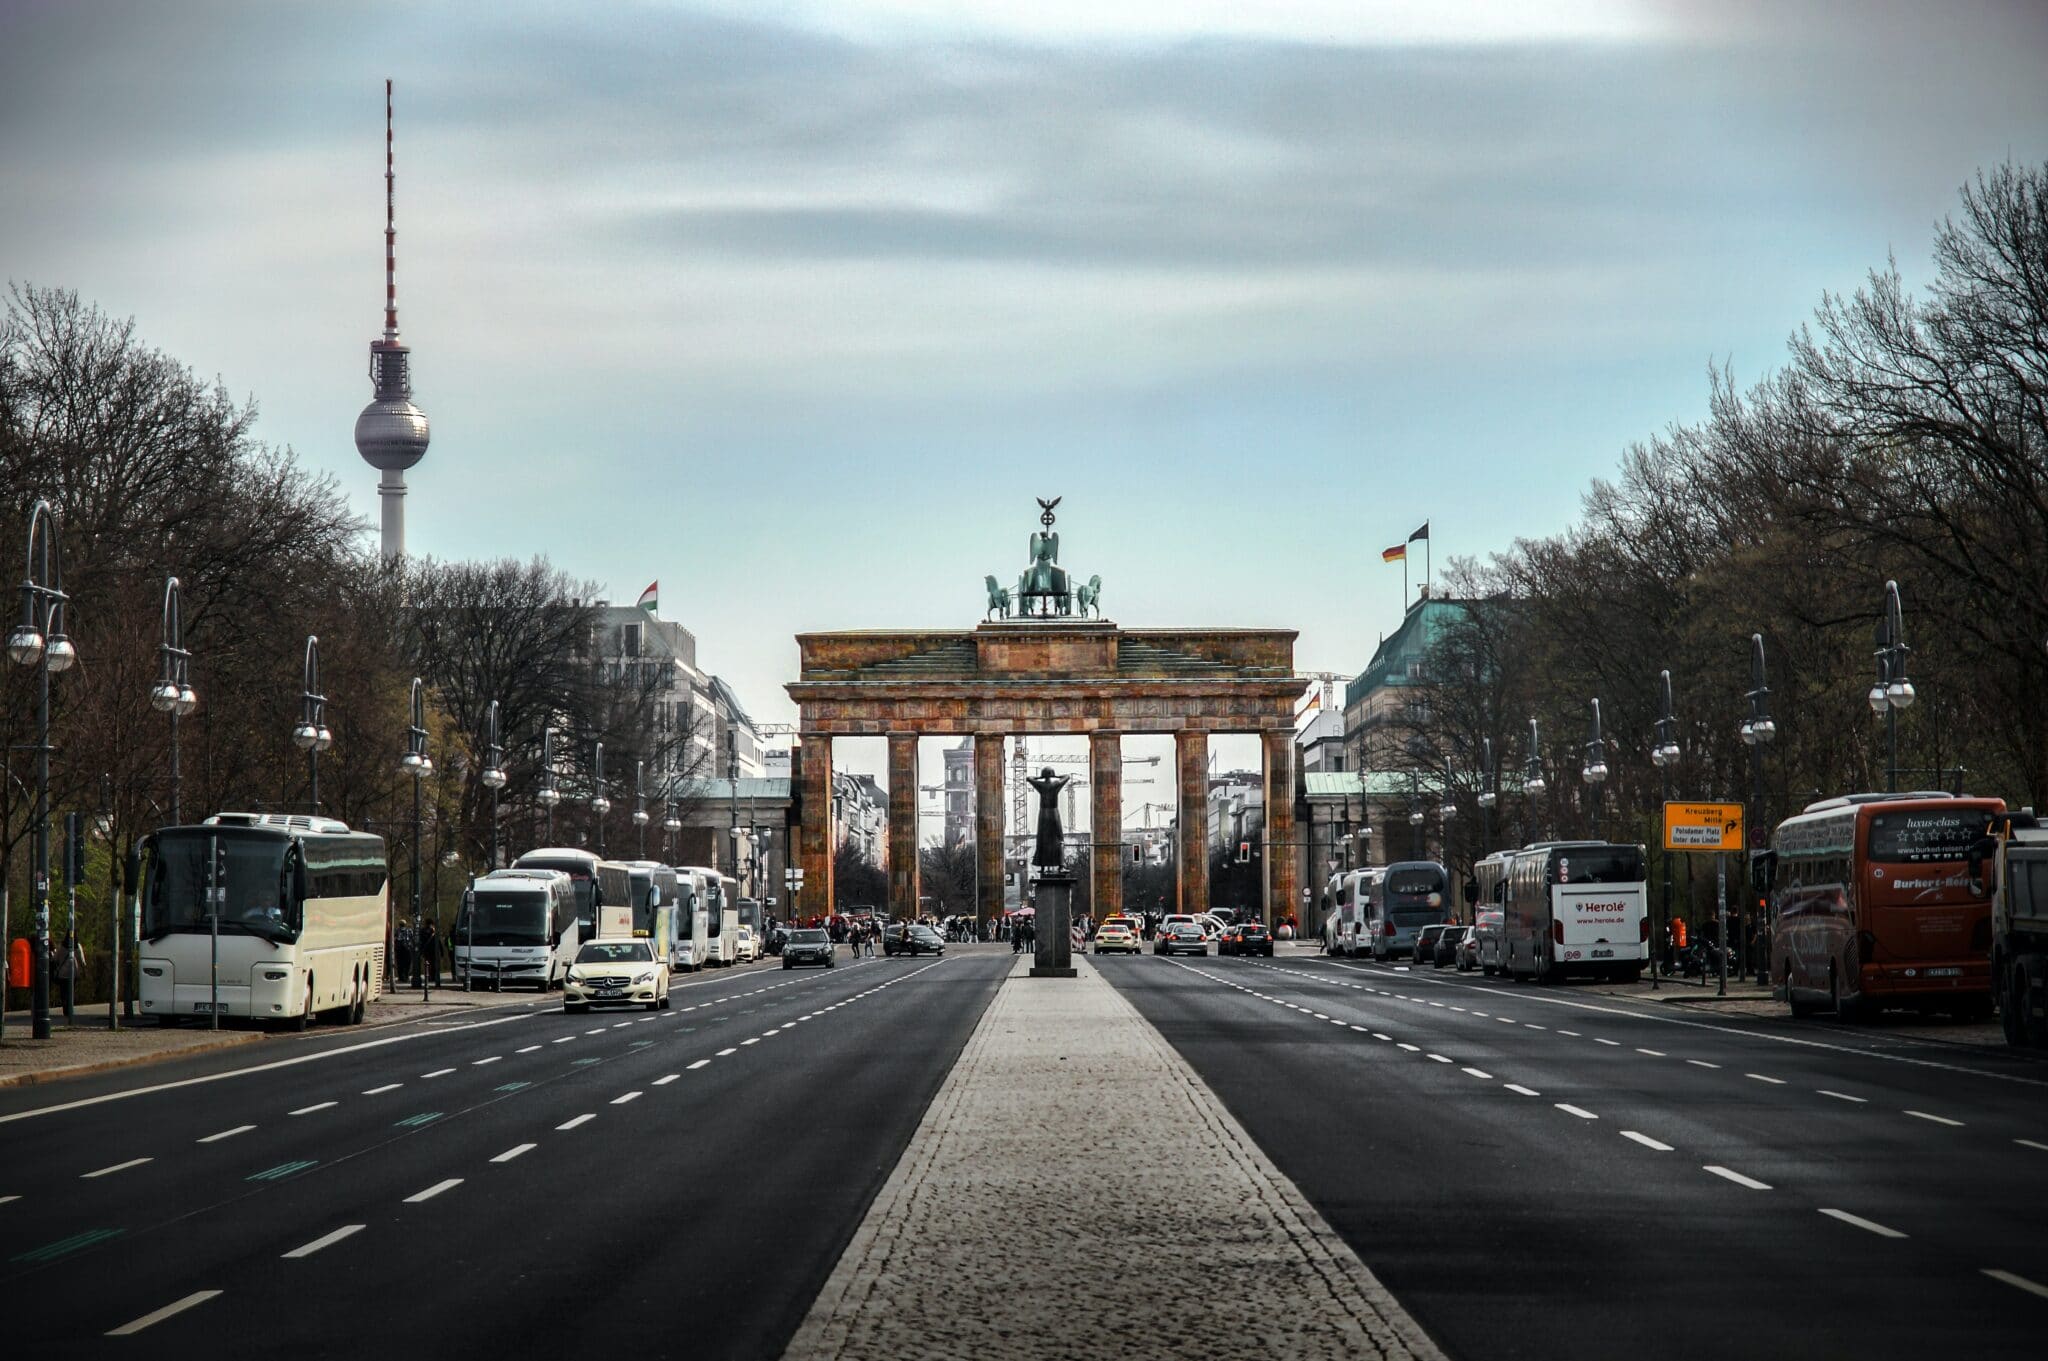 Deutschland als attraktiver Markt: Immer mehr Unternehmen aus dem Ausland buhlen um die Kunden